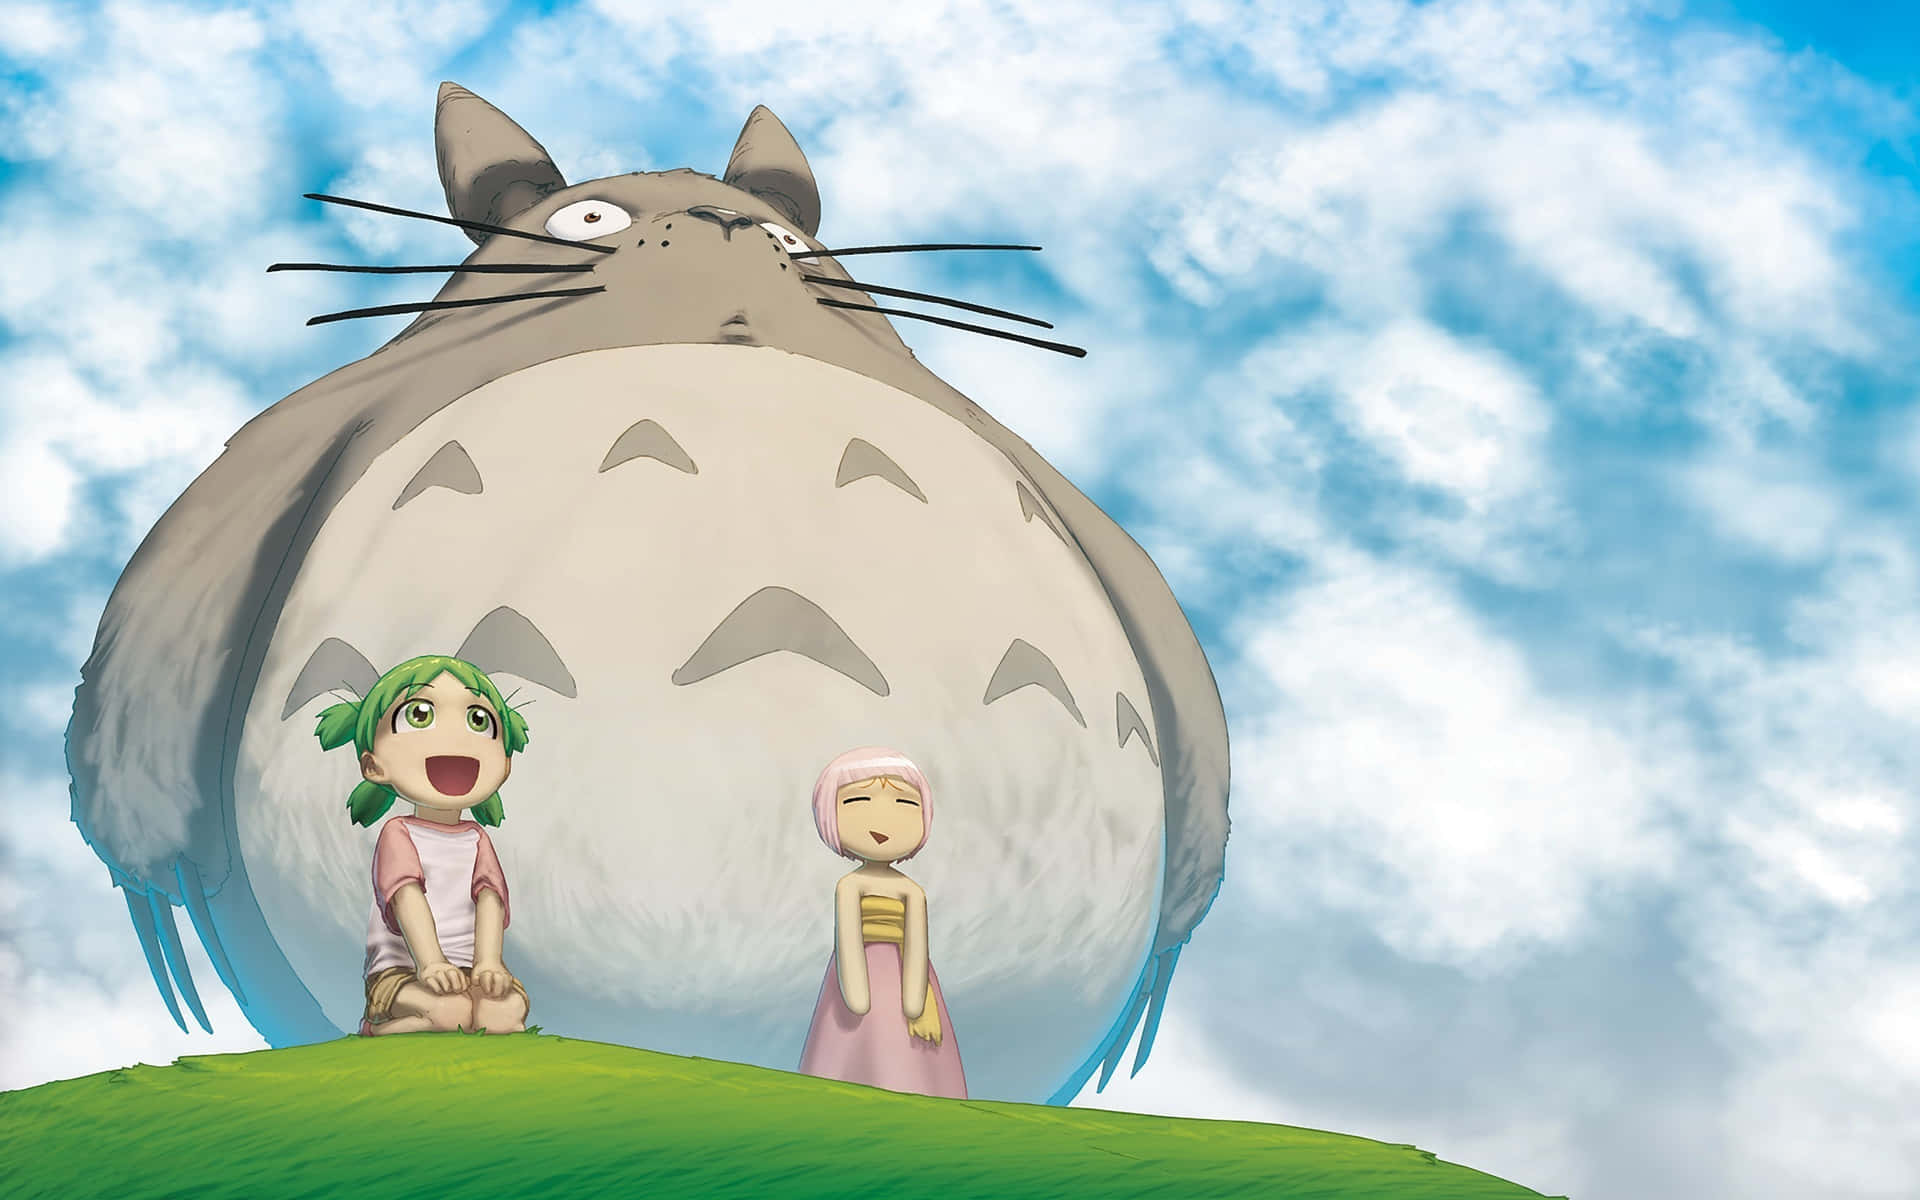 "A Friend in Nature: Totoro"